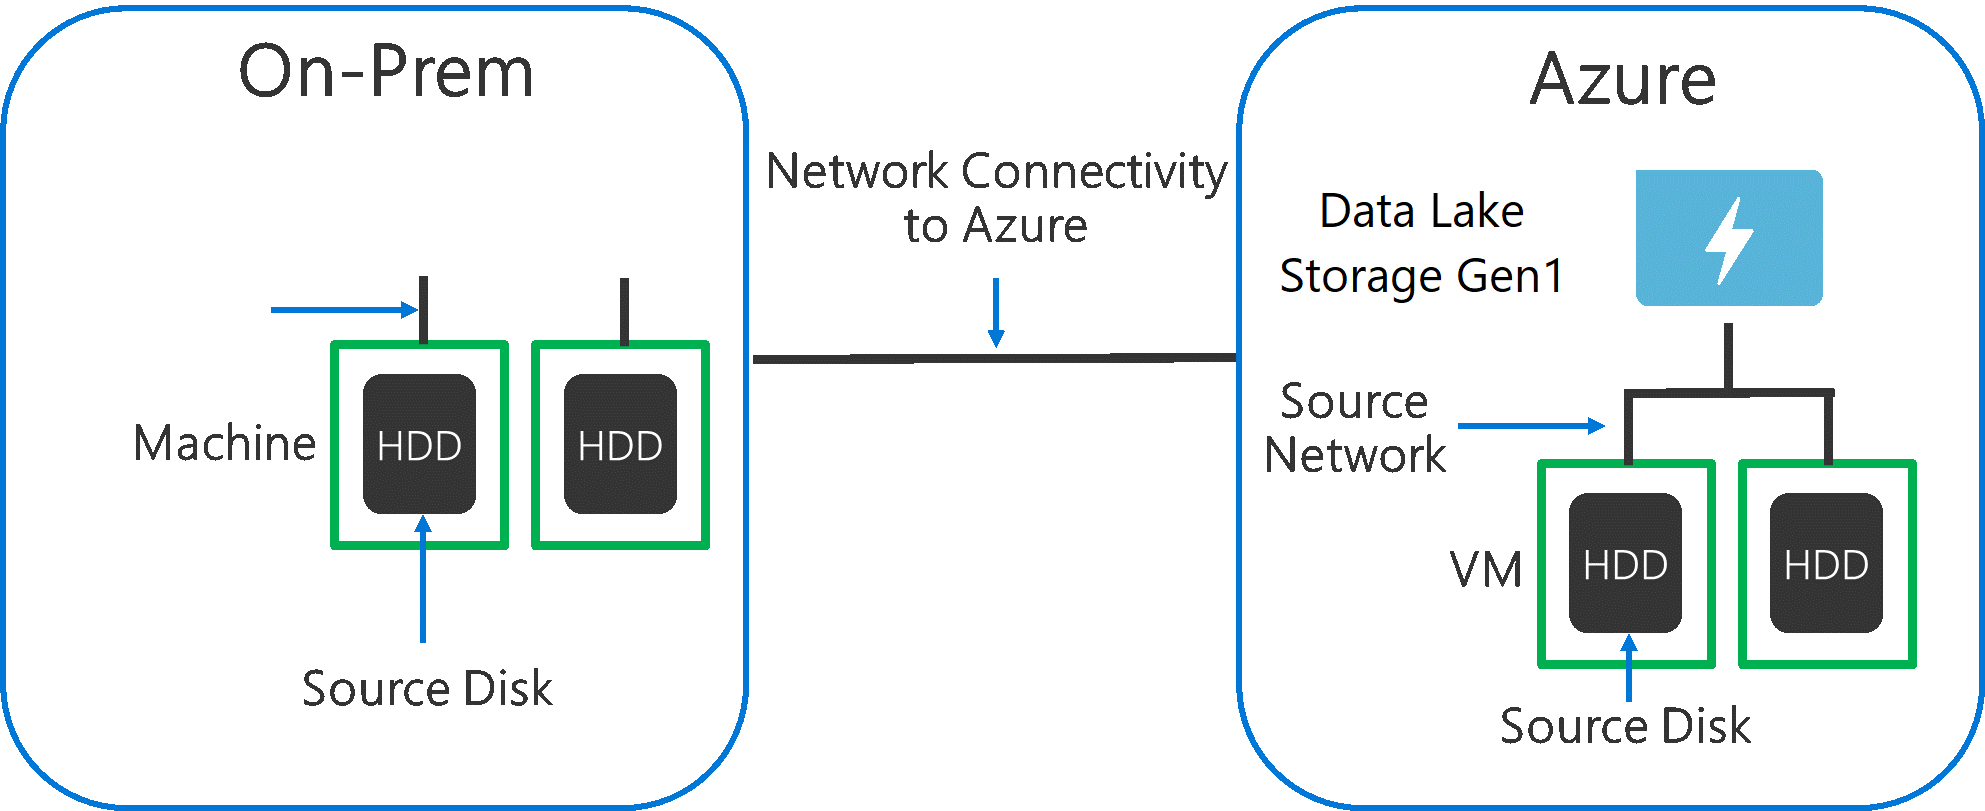 원본 하드웨어, 원본 네트워크 하드웨어 및 Data Lake Storage Gen1에 대한 네트워크 연결에서 병목 현상이 발생할 수 있음을 보여주는 다이어그램입니다.